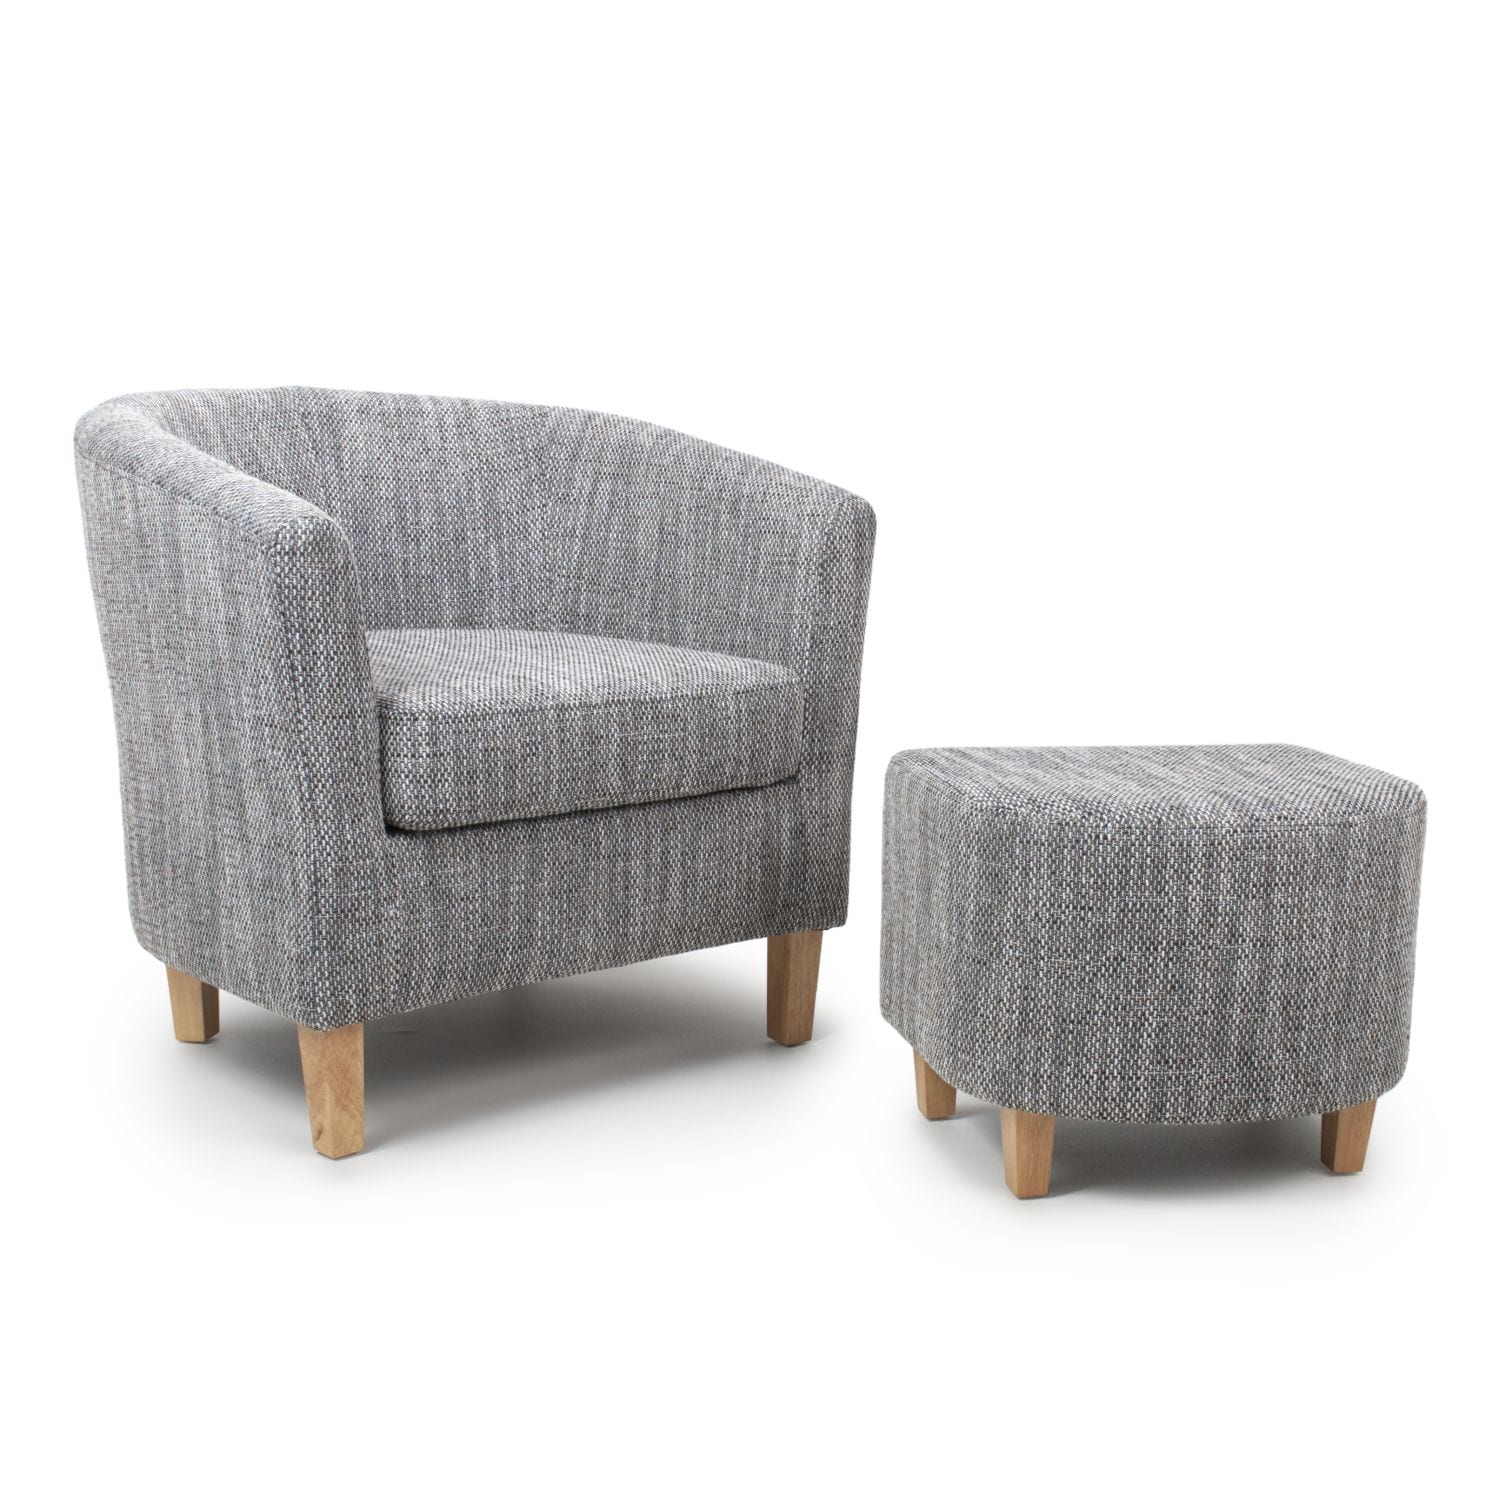 Tabula Tweed Grey Chair & Stool Set